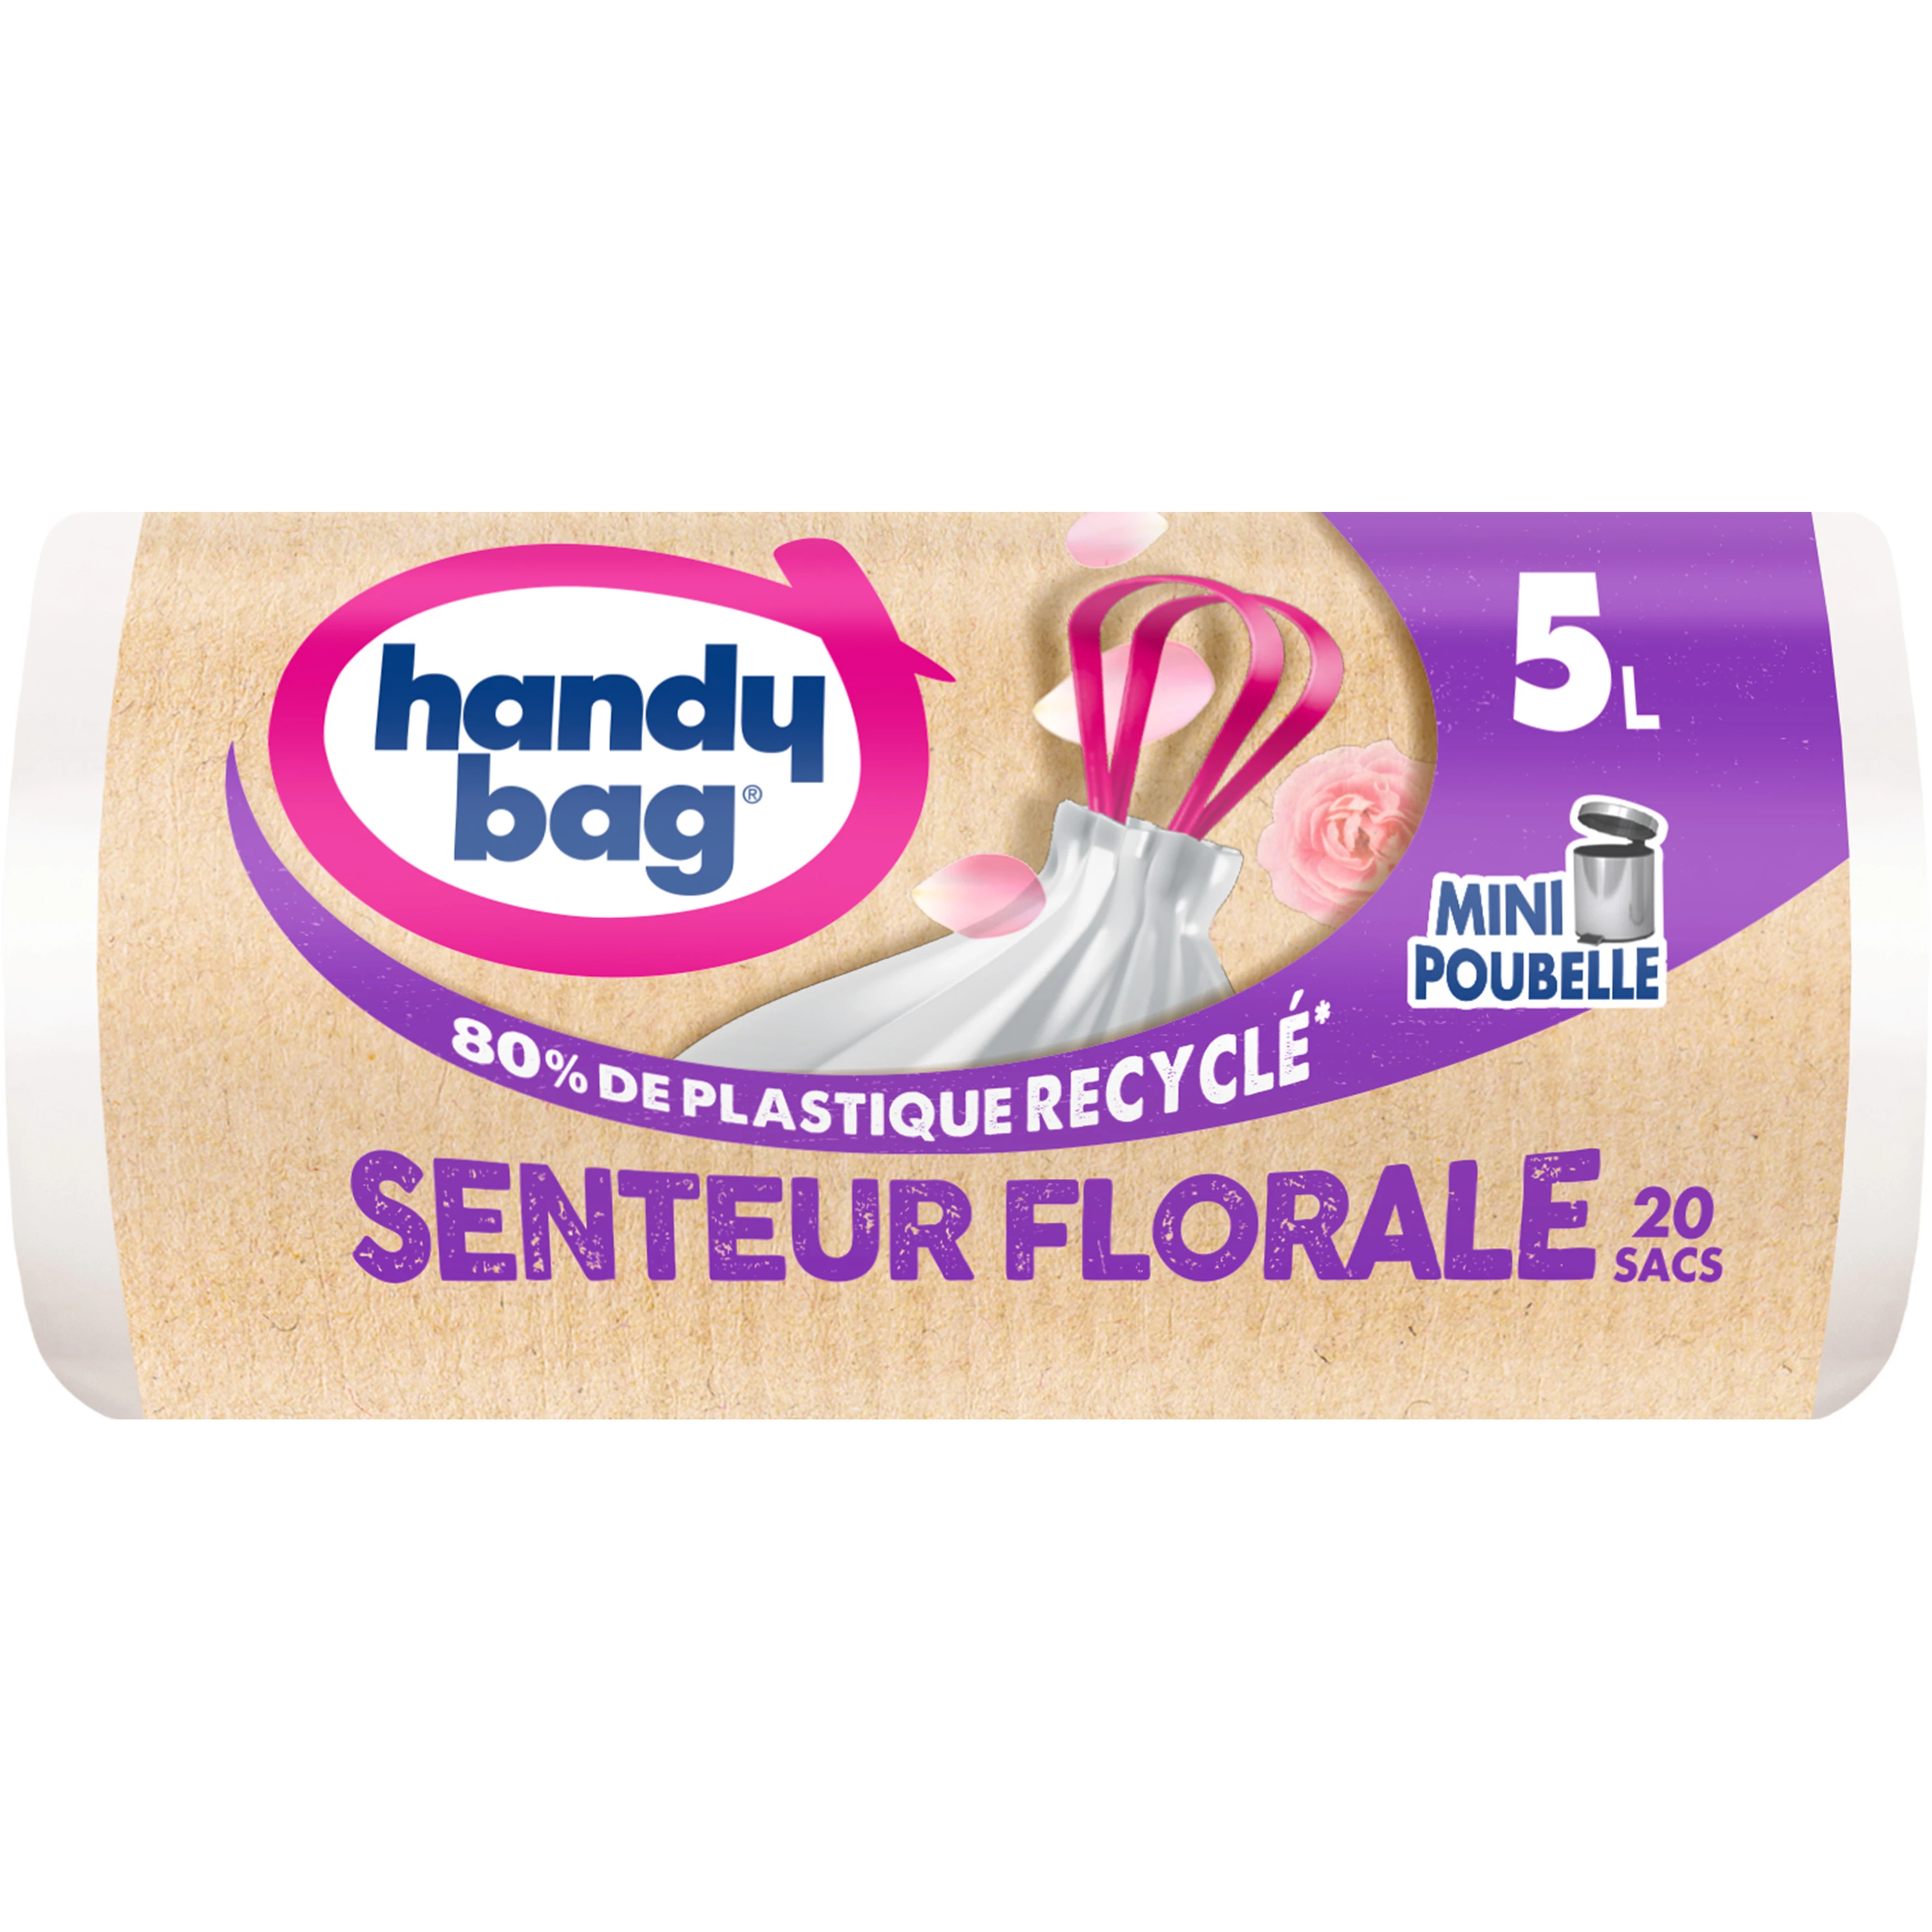 Sac mini poubelle senteur florale X20 5L - HANDY BAG